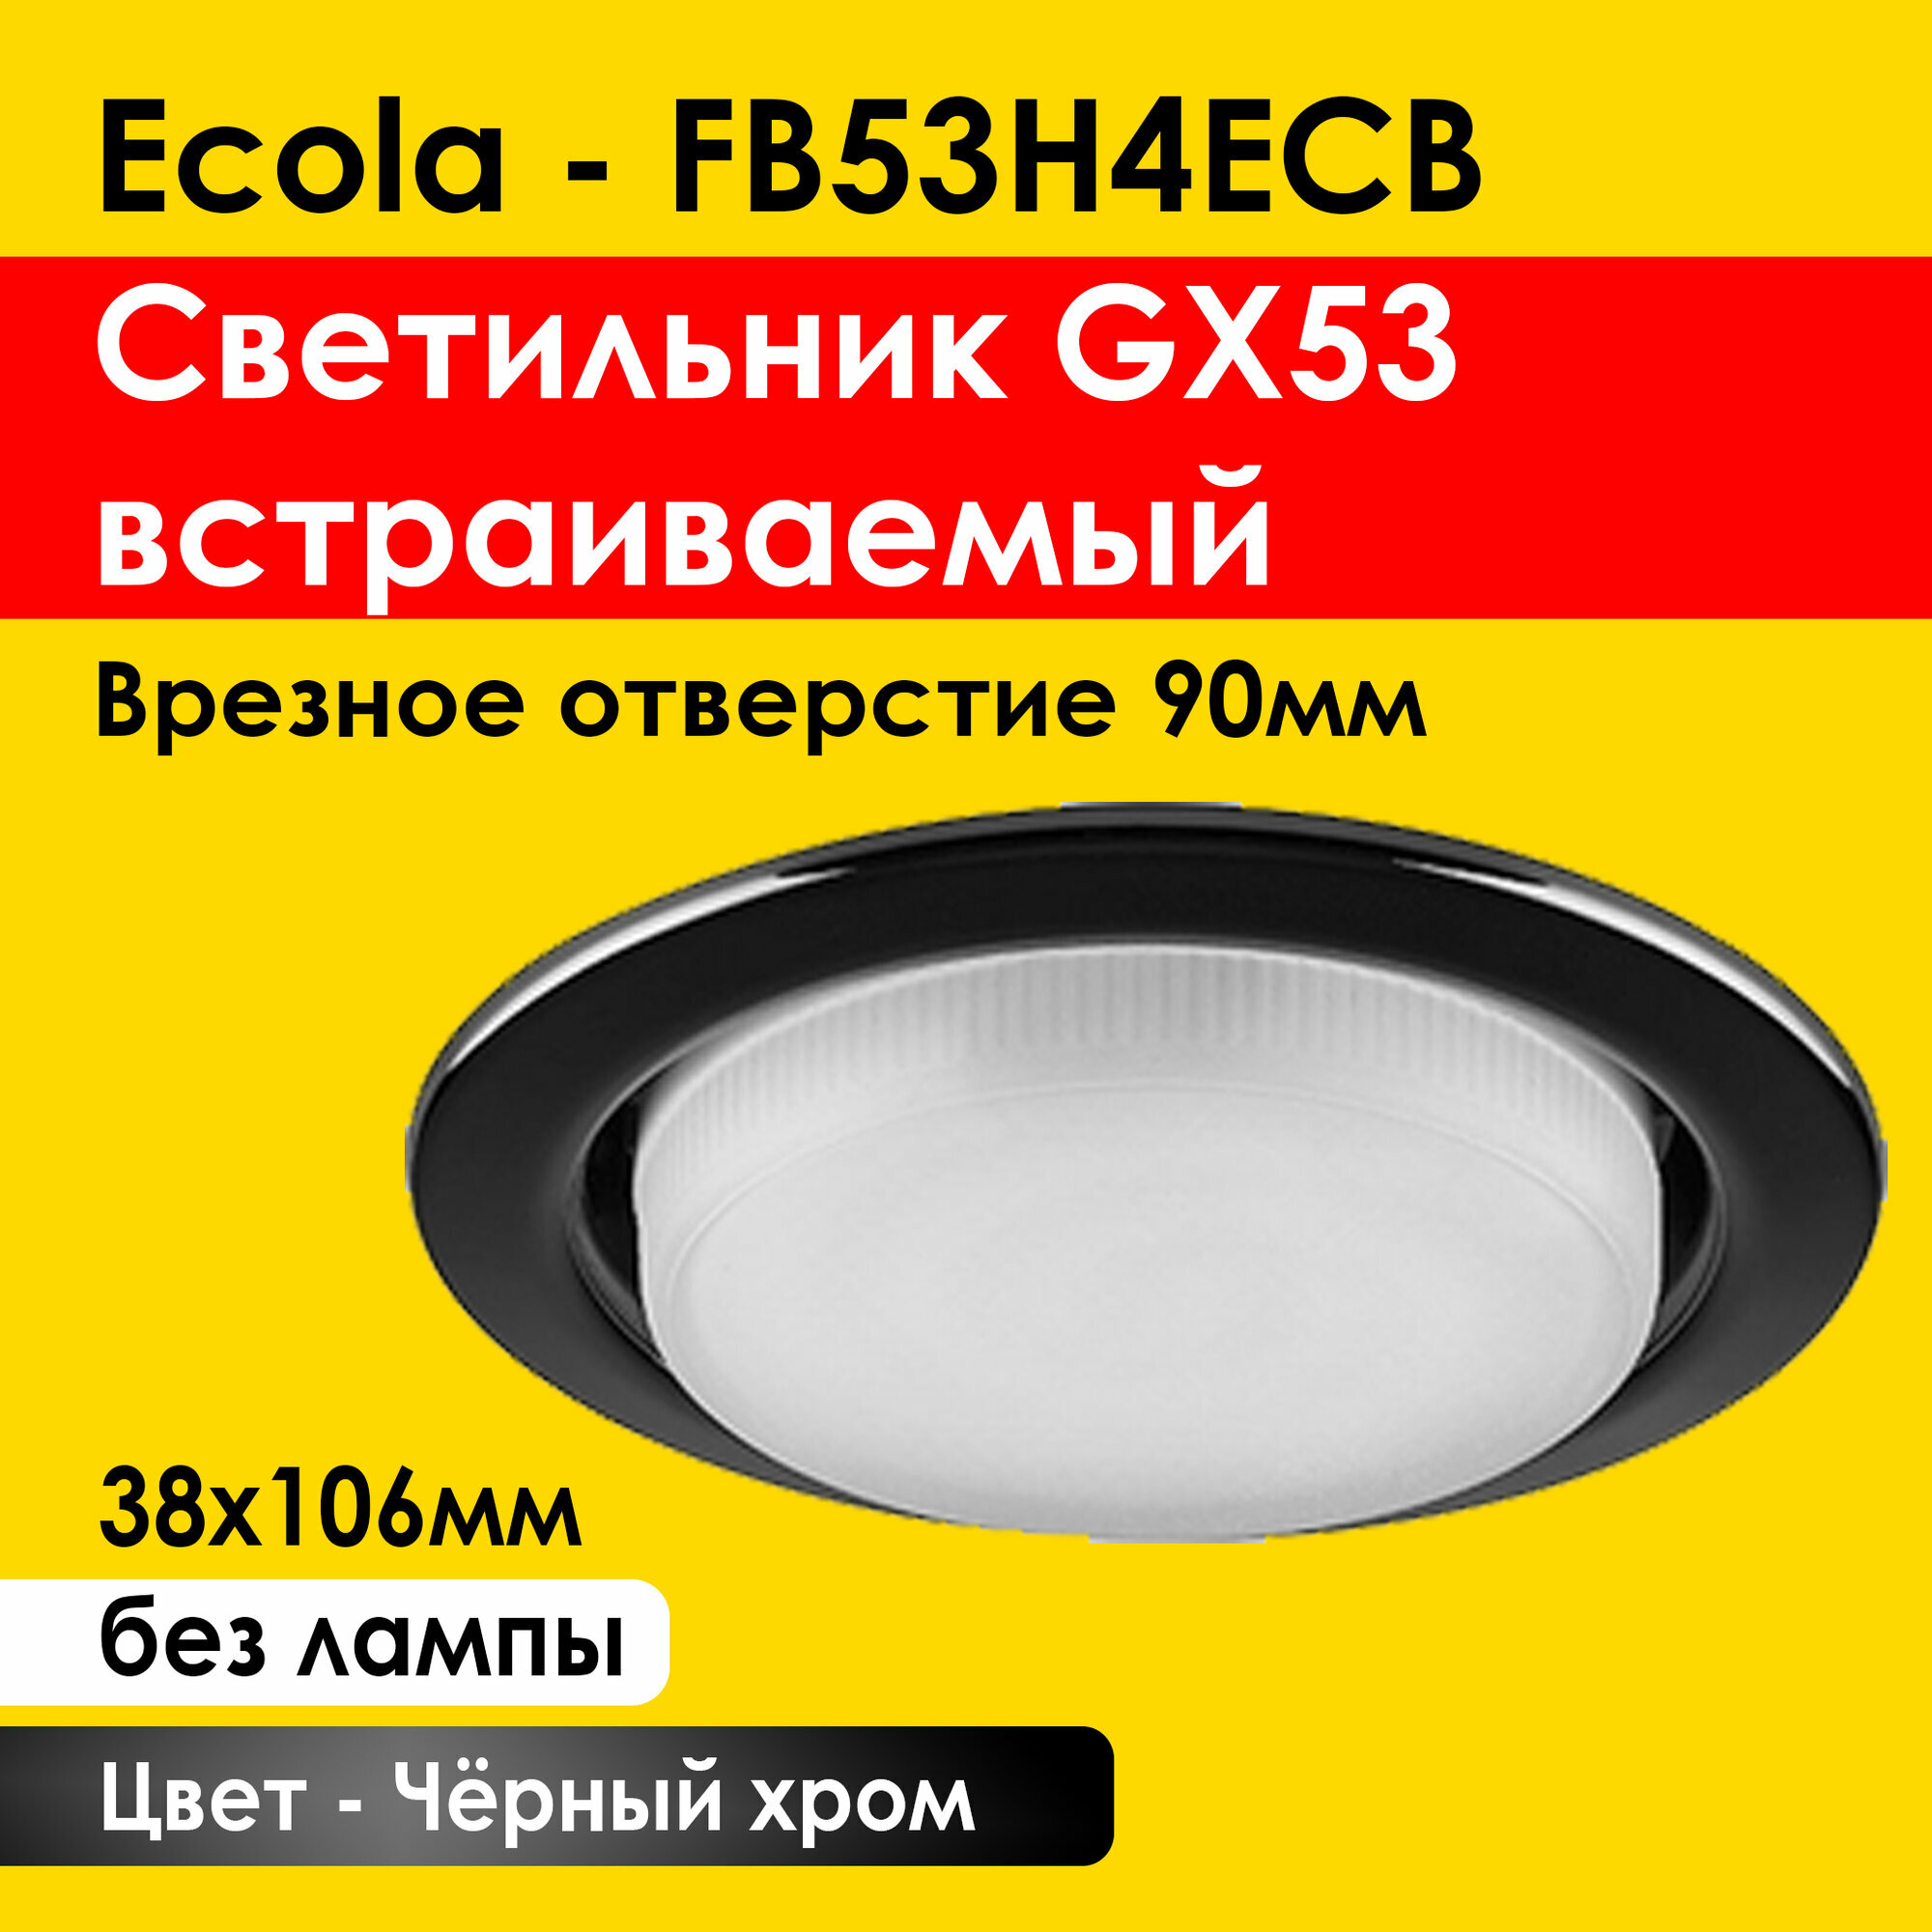 Ecola GX53 H4 светильник встраиваемый, потолочный - для натяжного потолка (Черный хром 38x106) FB53H4ECB